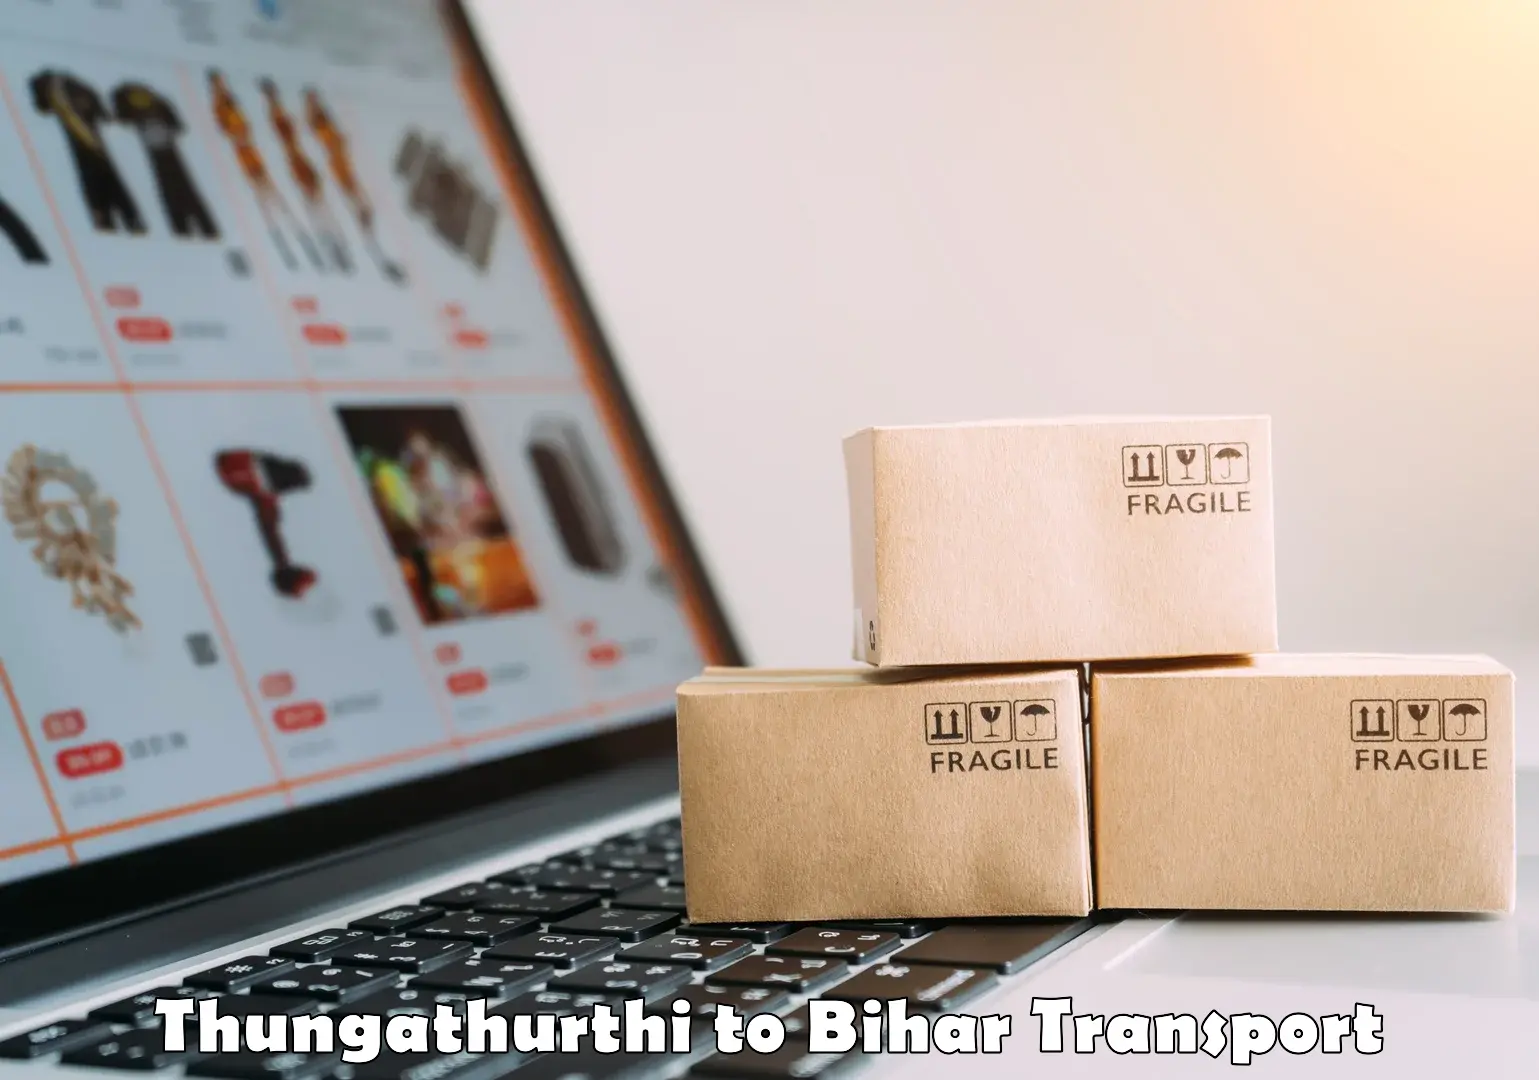 Domestic transport services Thungathurthi to Wazirganj